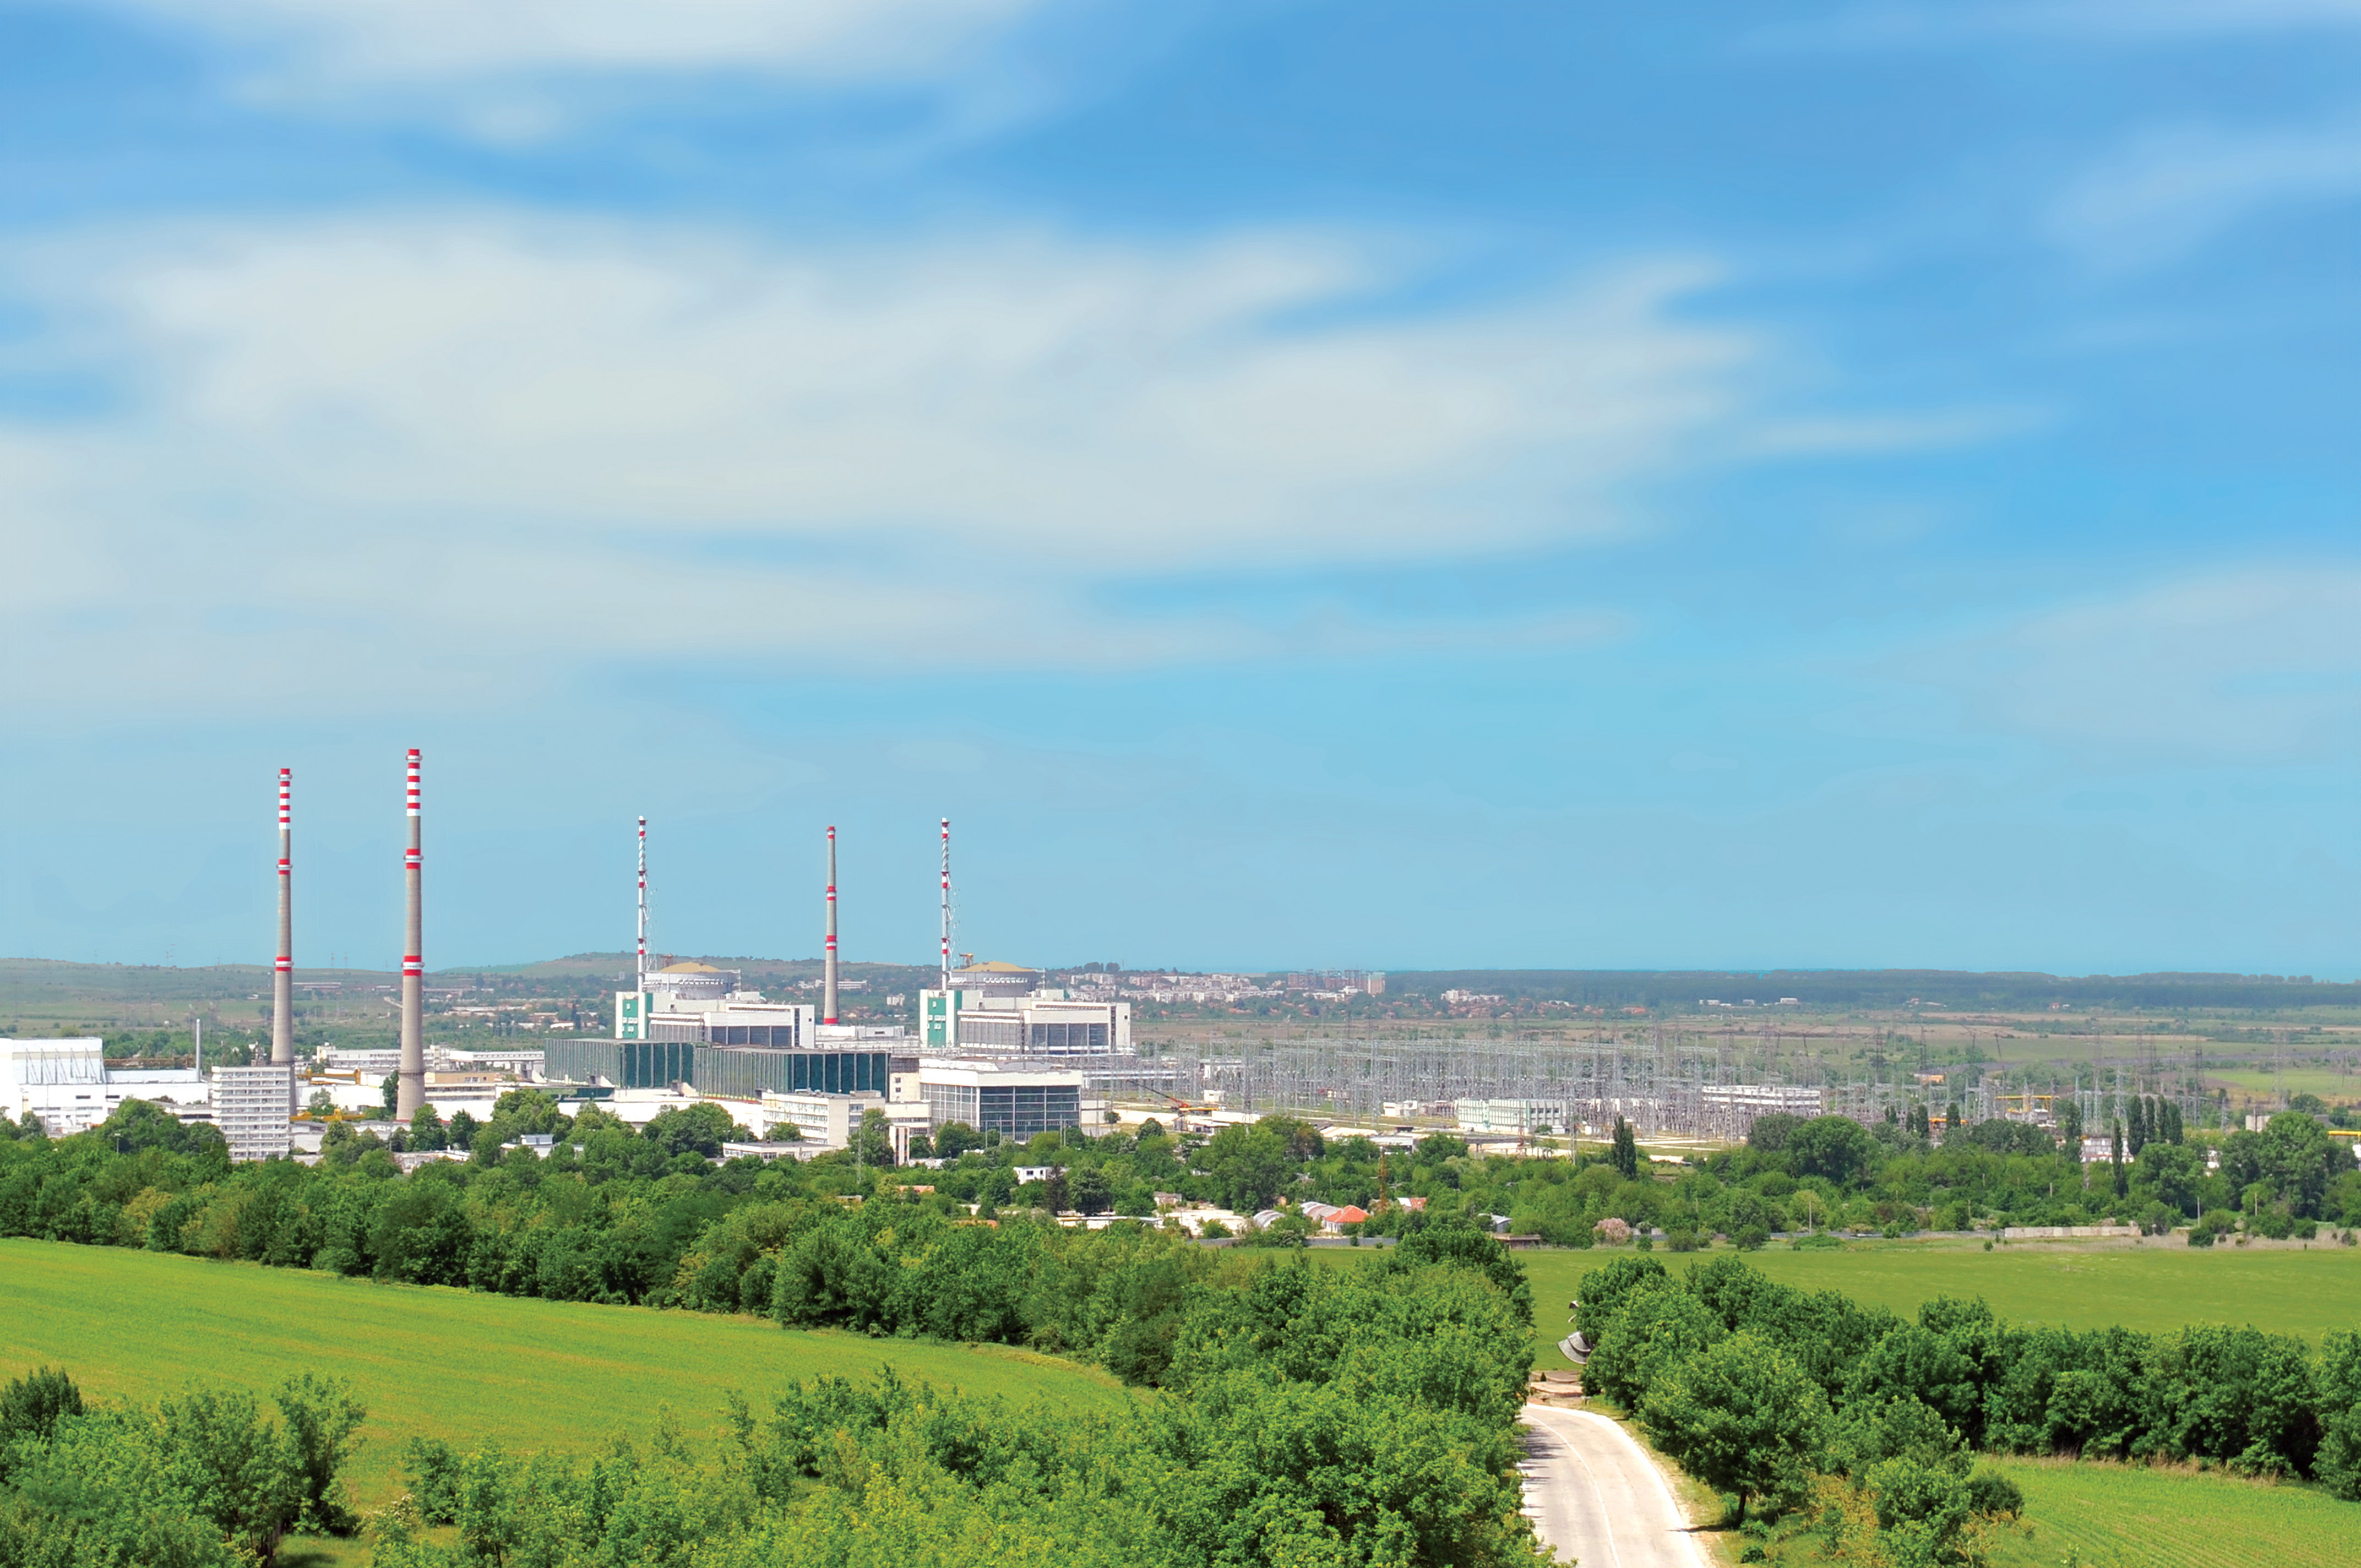 Elektrownia jądrowa Kozłoduj. Fot. Wikimedia Commons.